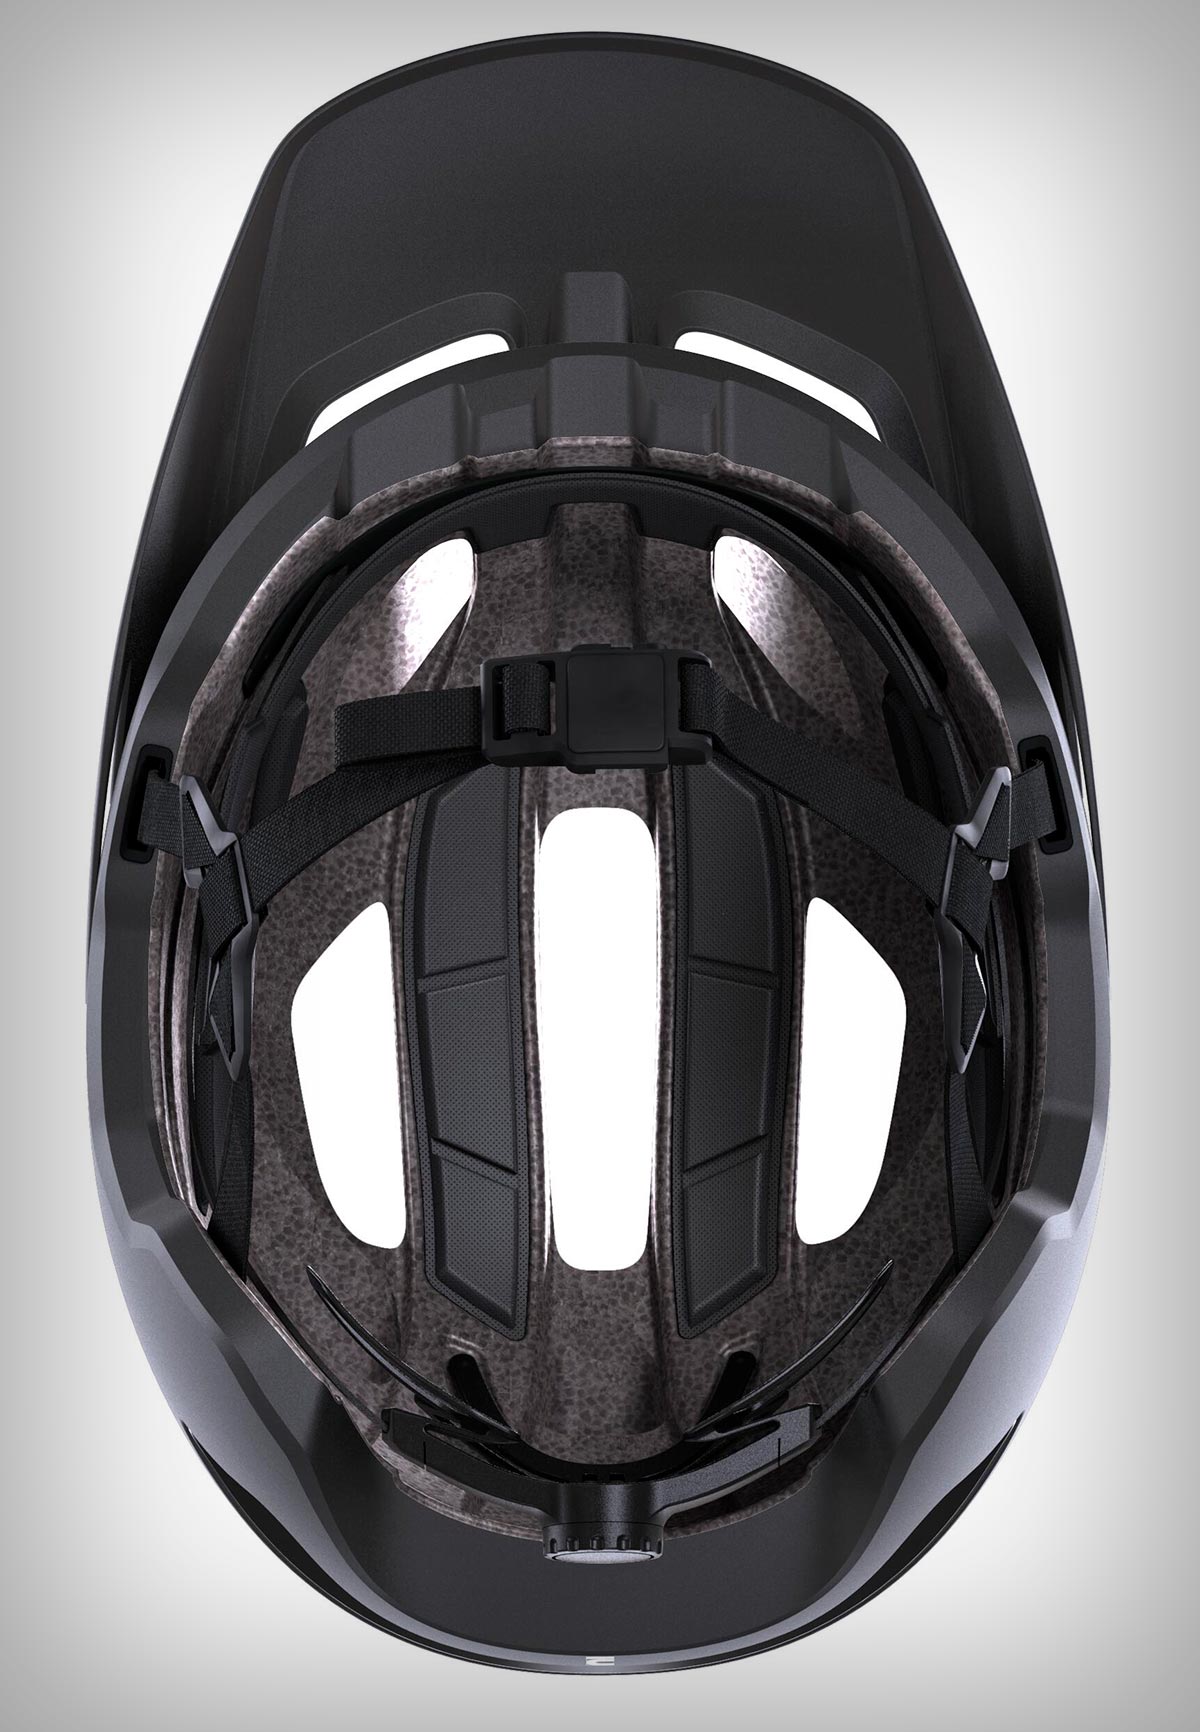 Decathlon presenta la gama de cascos Feel, específica para amantes del MTB más agresivo